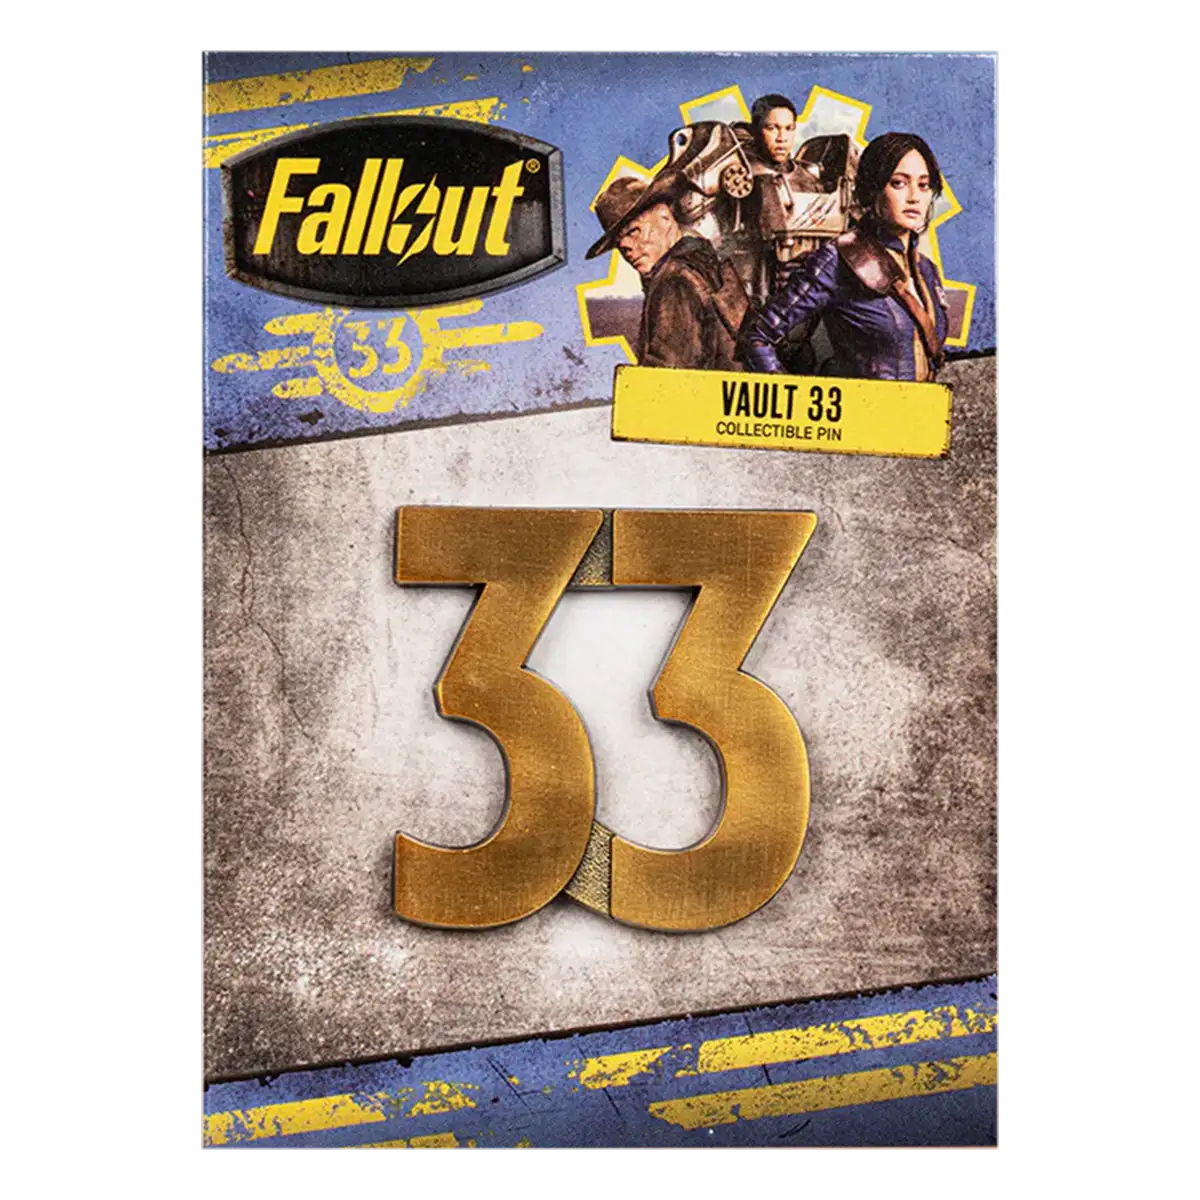 Fallout Pin "Vault 33"